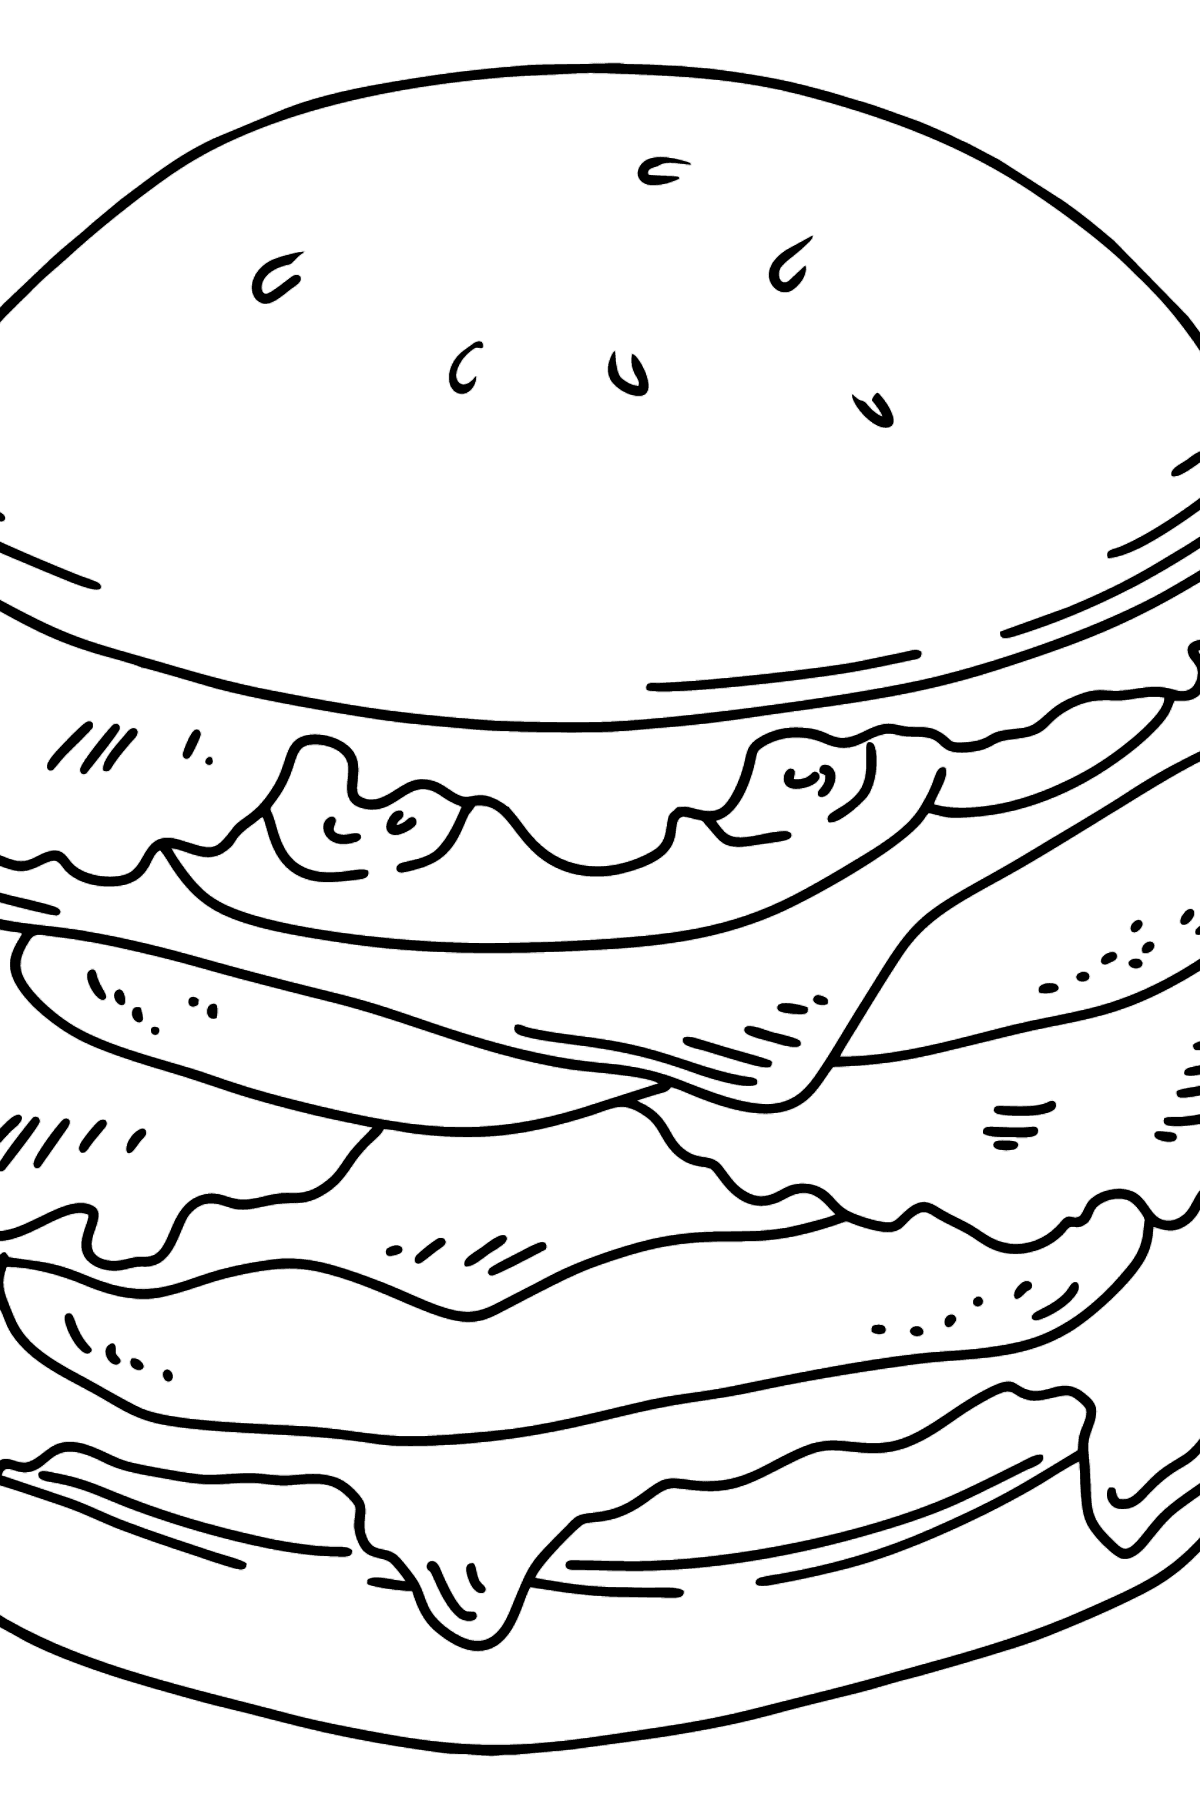 Kleurplaat sappige hamburger - kleurplaten voor kinderen